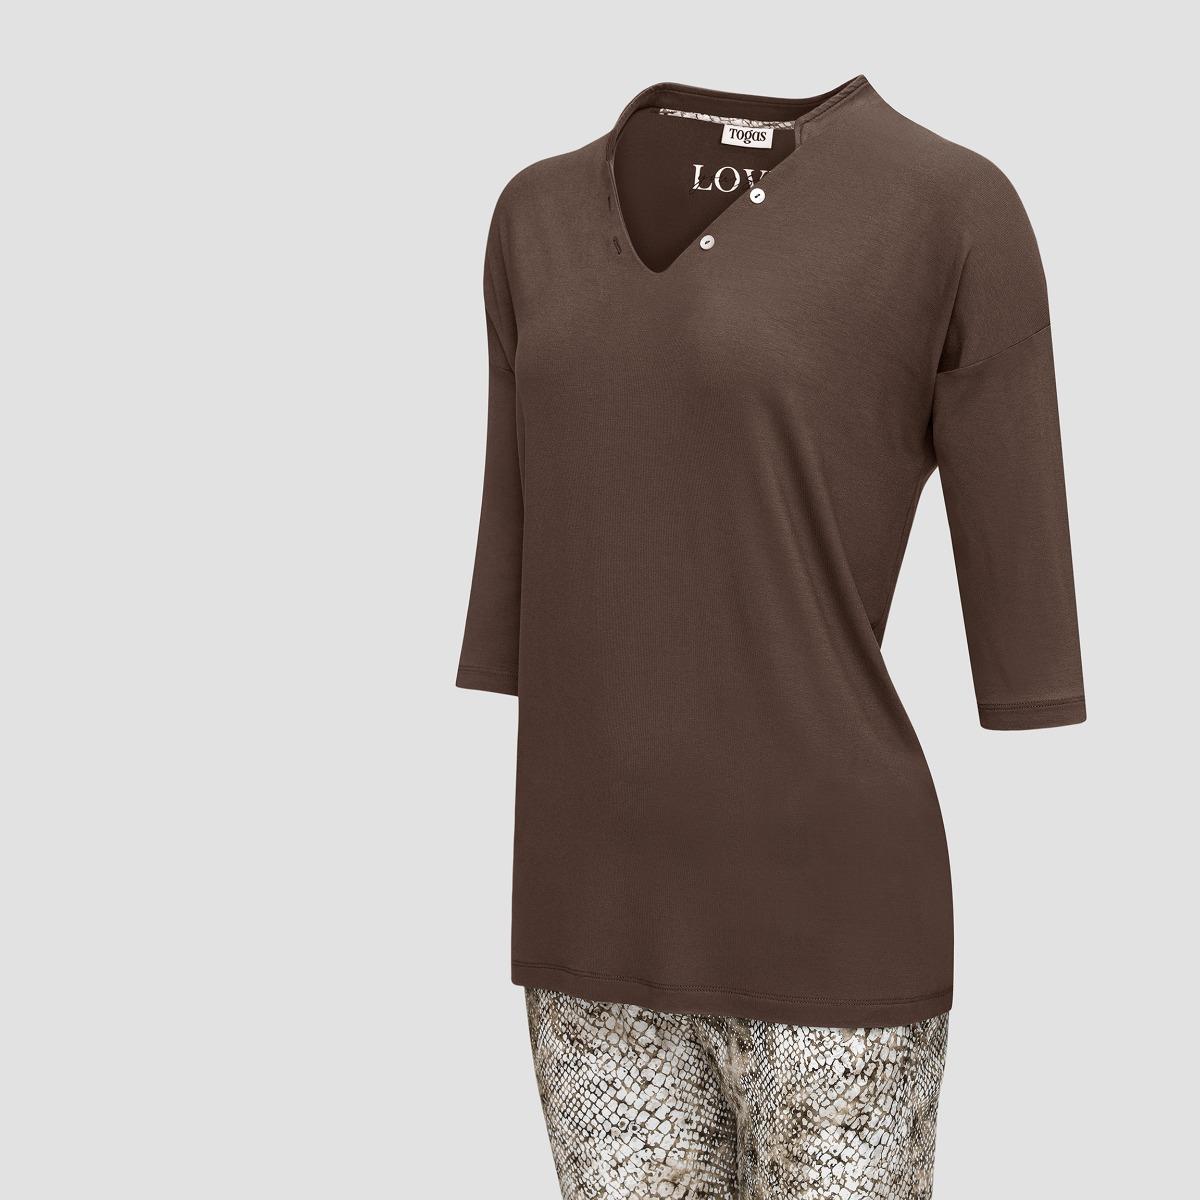 Пижама Togas Селиса коричневая женская m(46), цвет коричневый, размер M (46) - фото 2